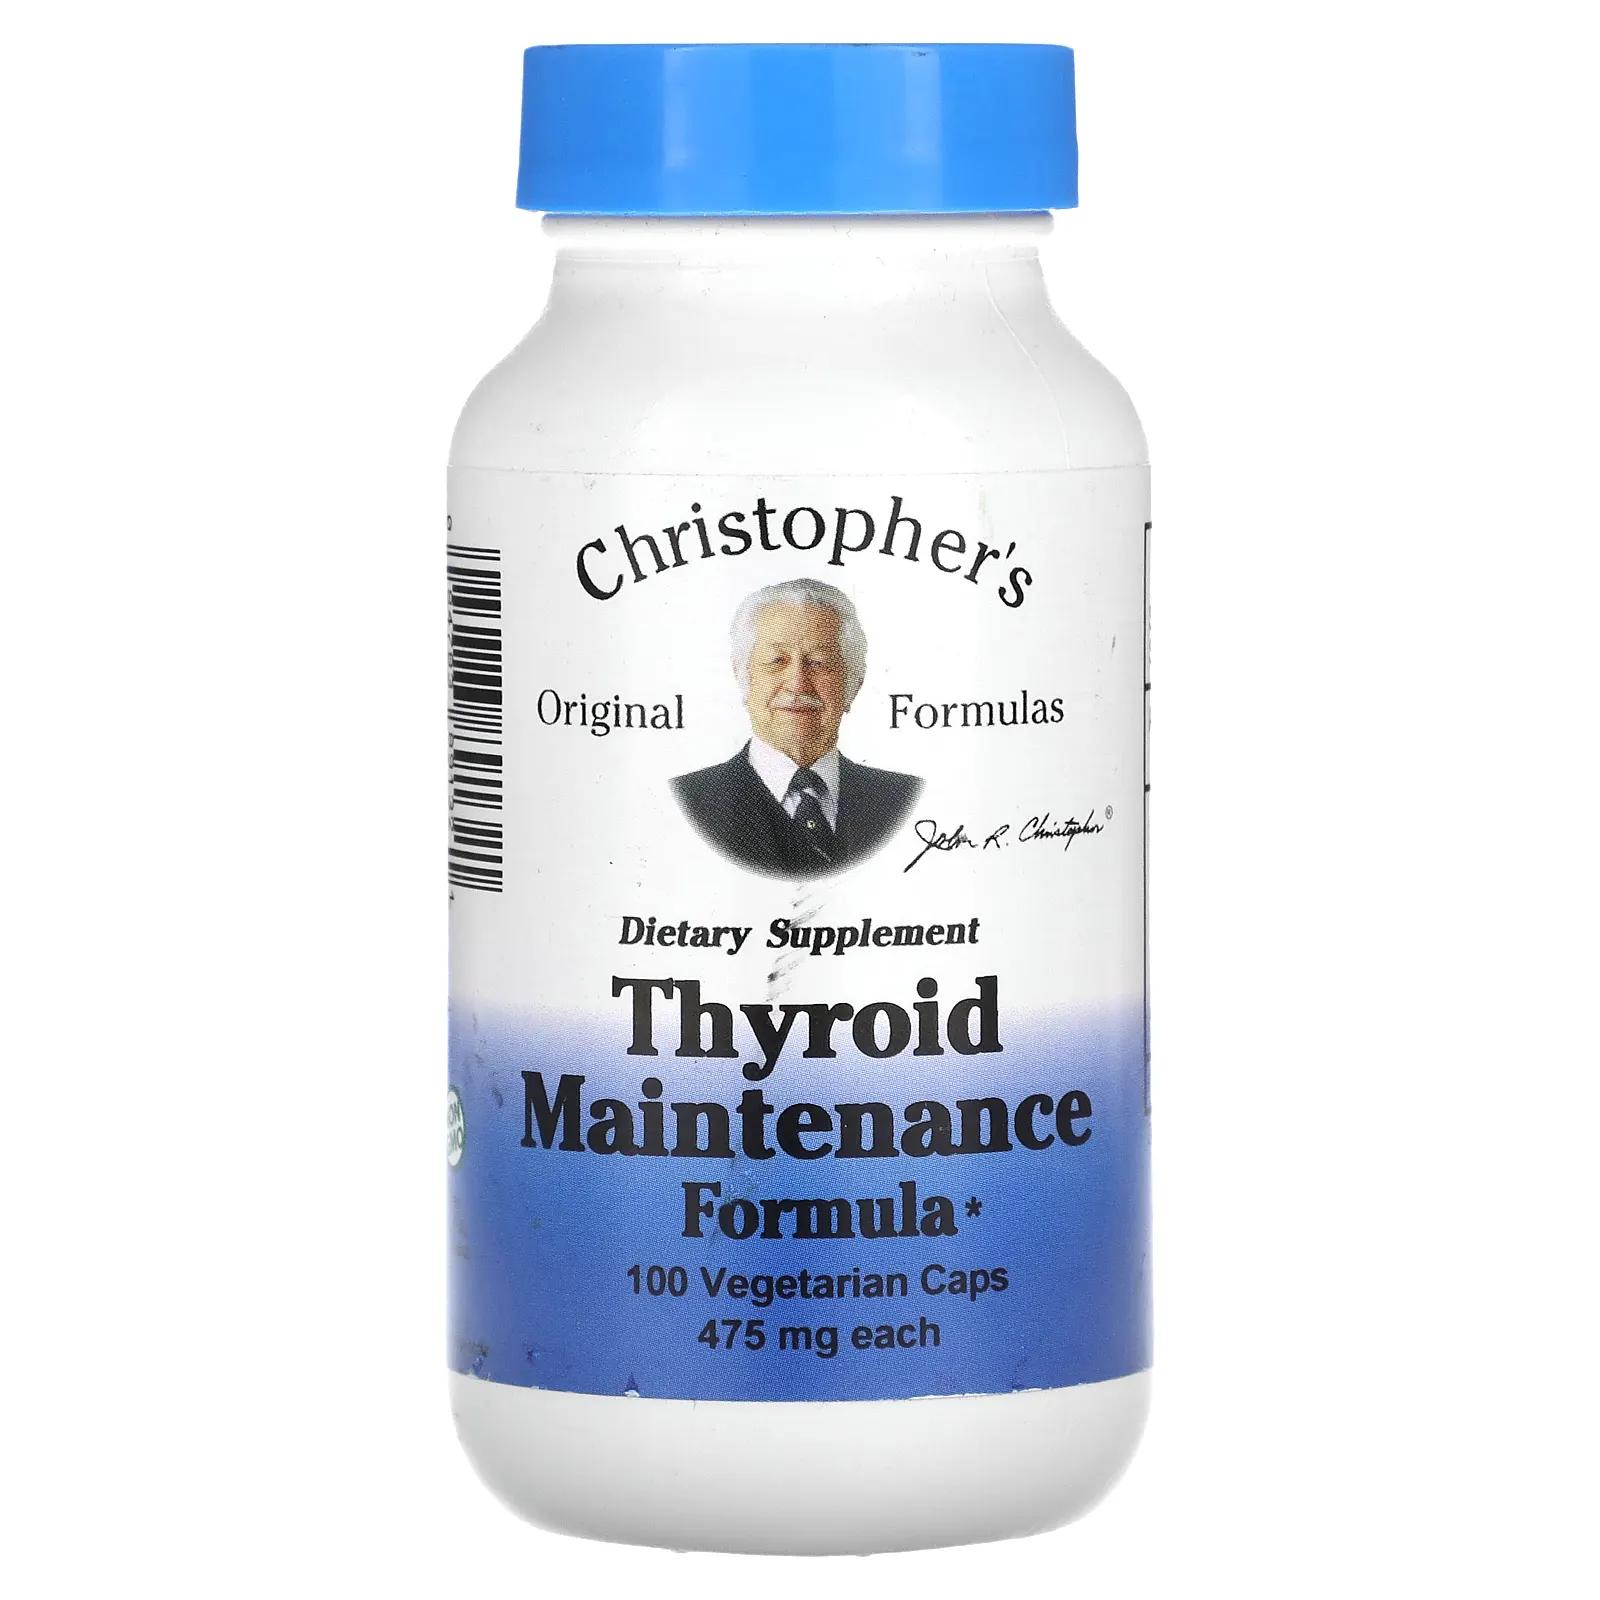 Christopher's Original Formulas Профилактика для щитовидной железы 475 мг каждая 100 капсул в растительной оболочке